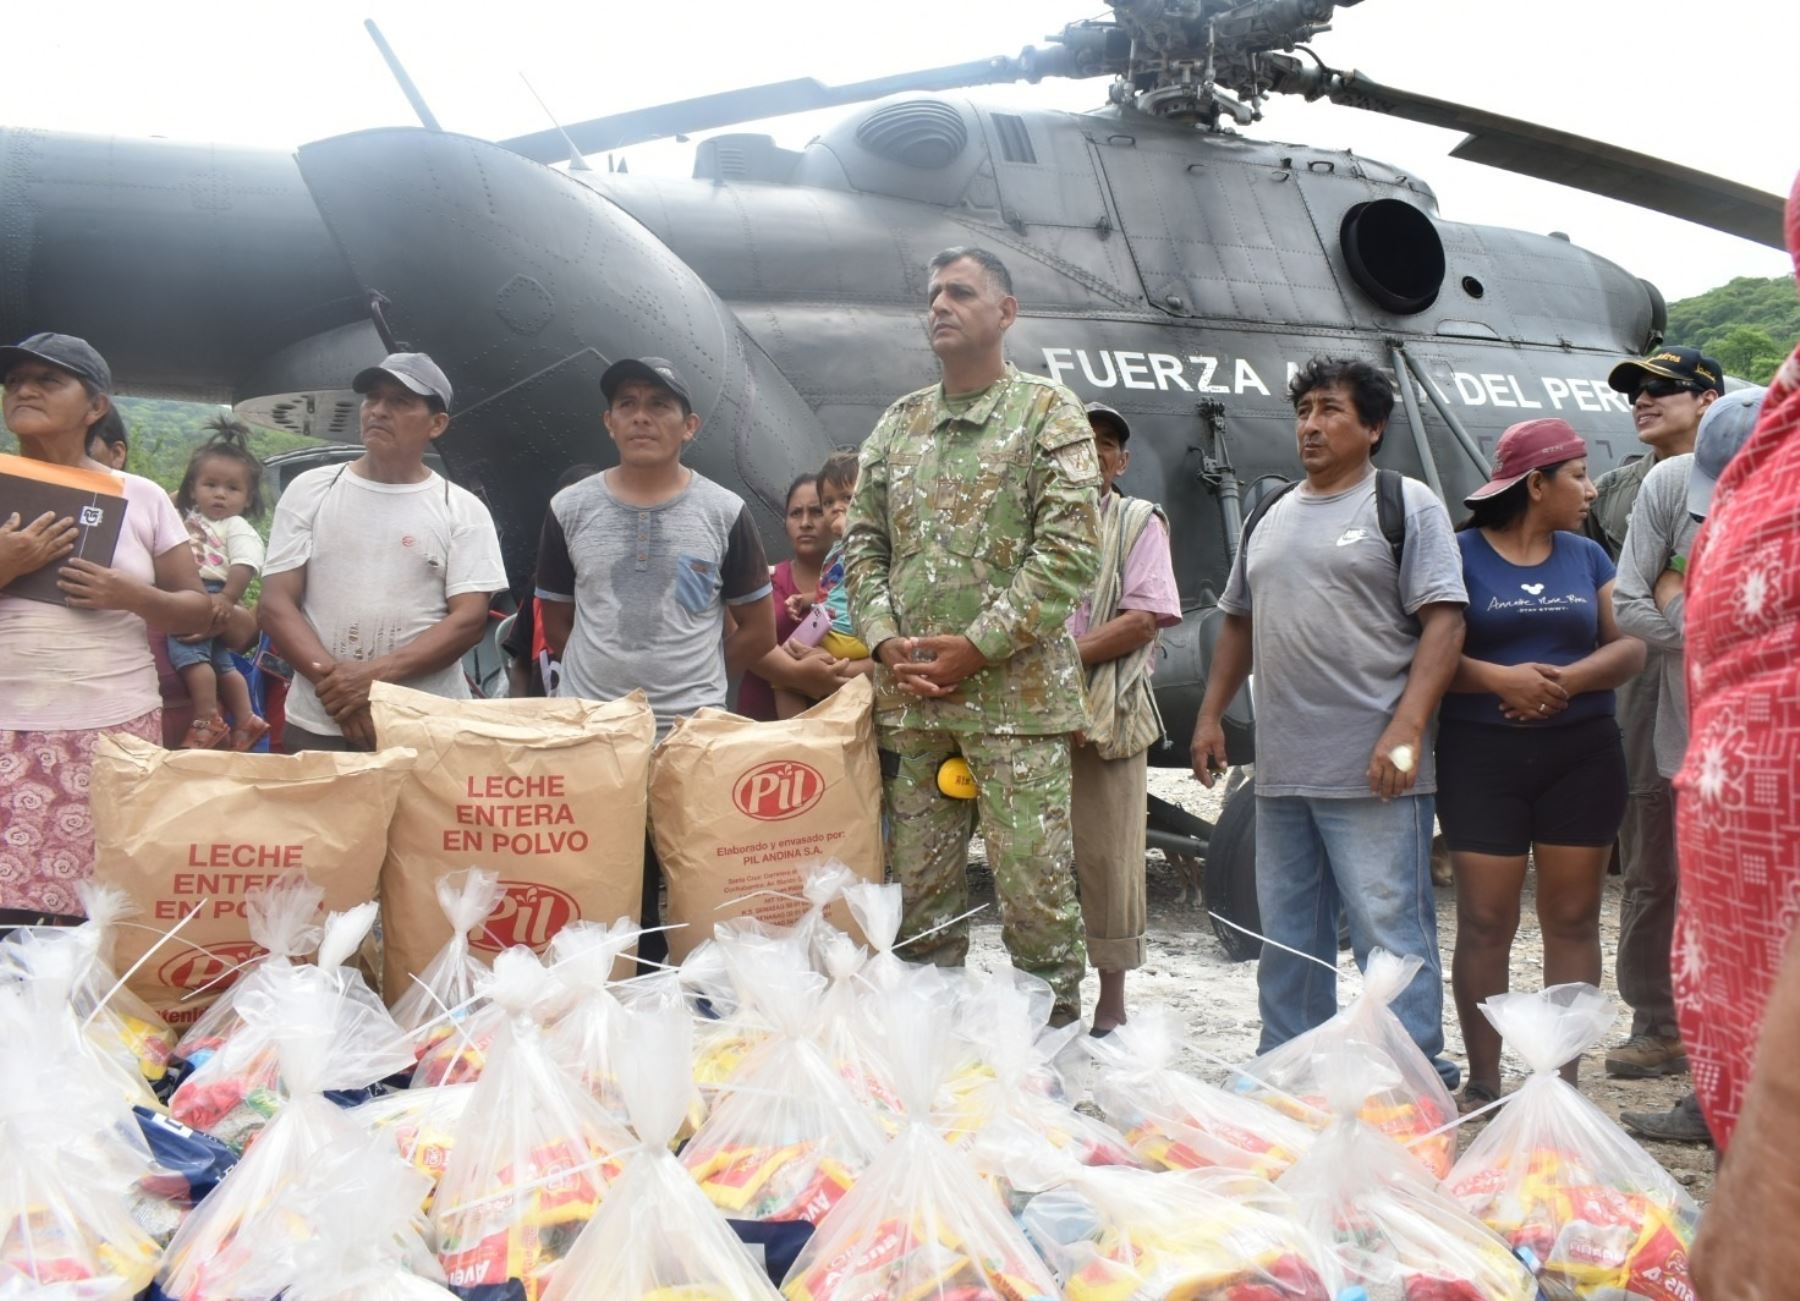 Ejército del Perú realiza un nuevo vuelo humanitario en la región Piura y trasladó 1.5 toneladas de alimentos al distrito de Huarmaca. ANDINA/Difusión